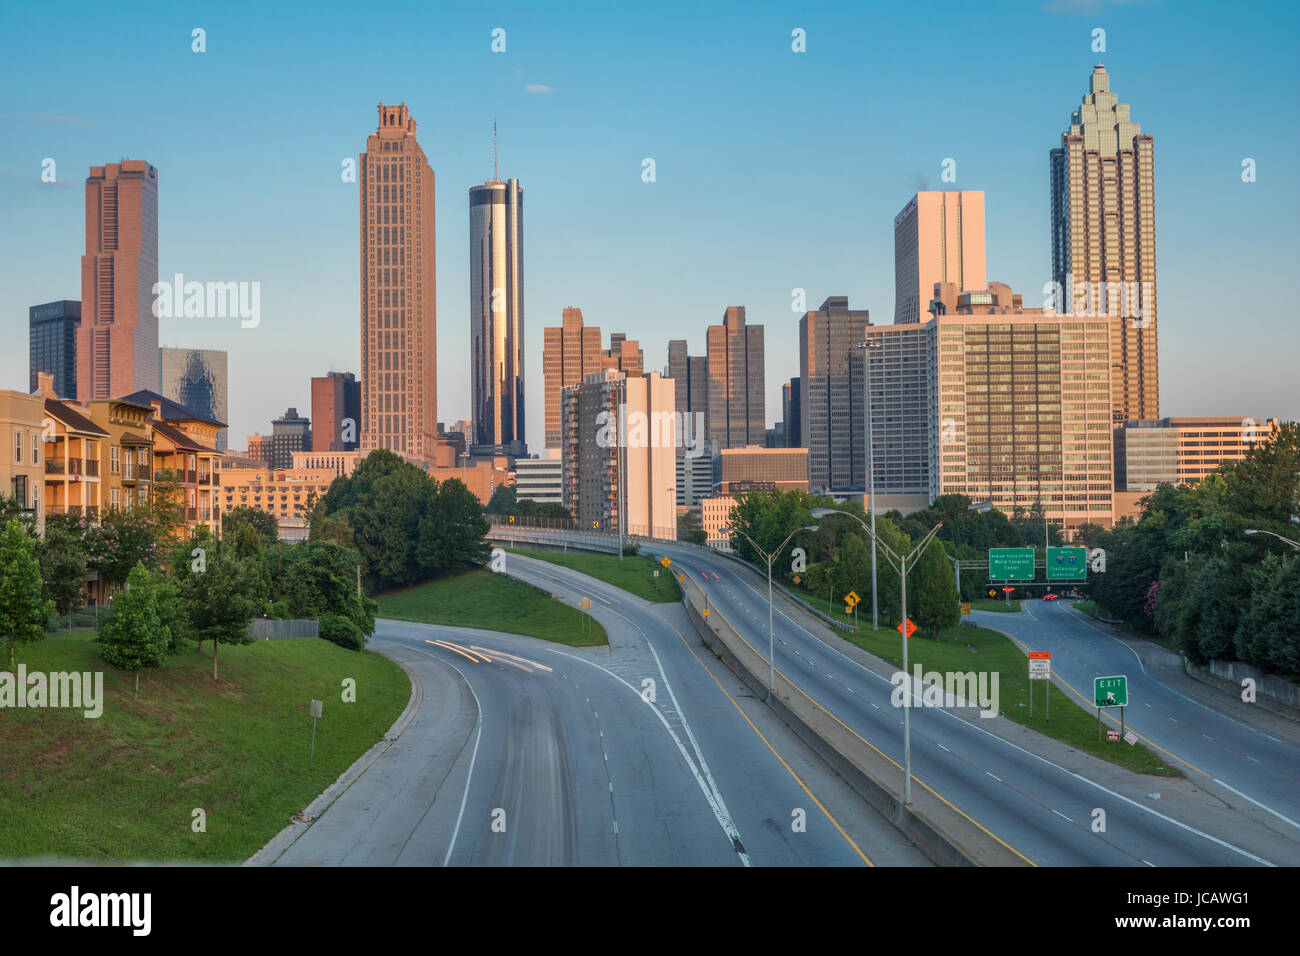 Photo horizontale de la skyline d'Atlanta comme vu en début de matinée de la Jackson Street Bridge (tous les noms d'entreprises sur les bâtiments ont été modifiés Banque D'Images